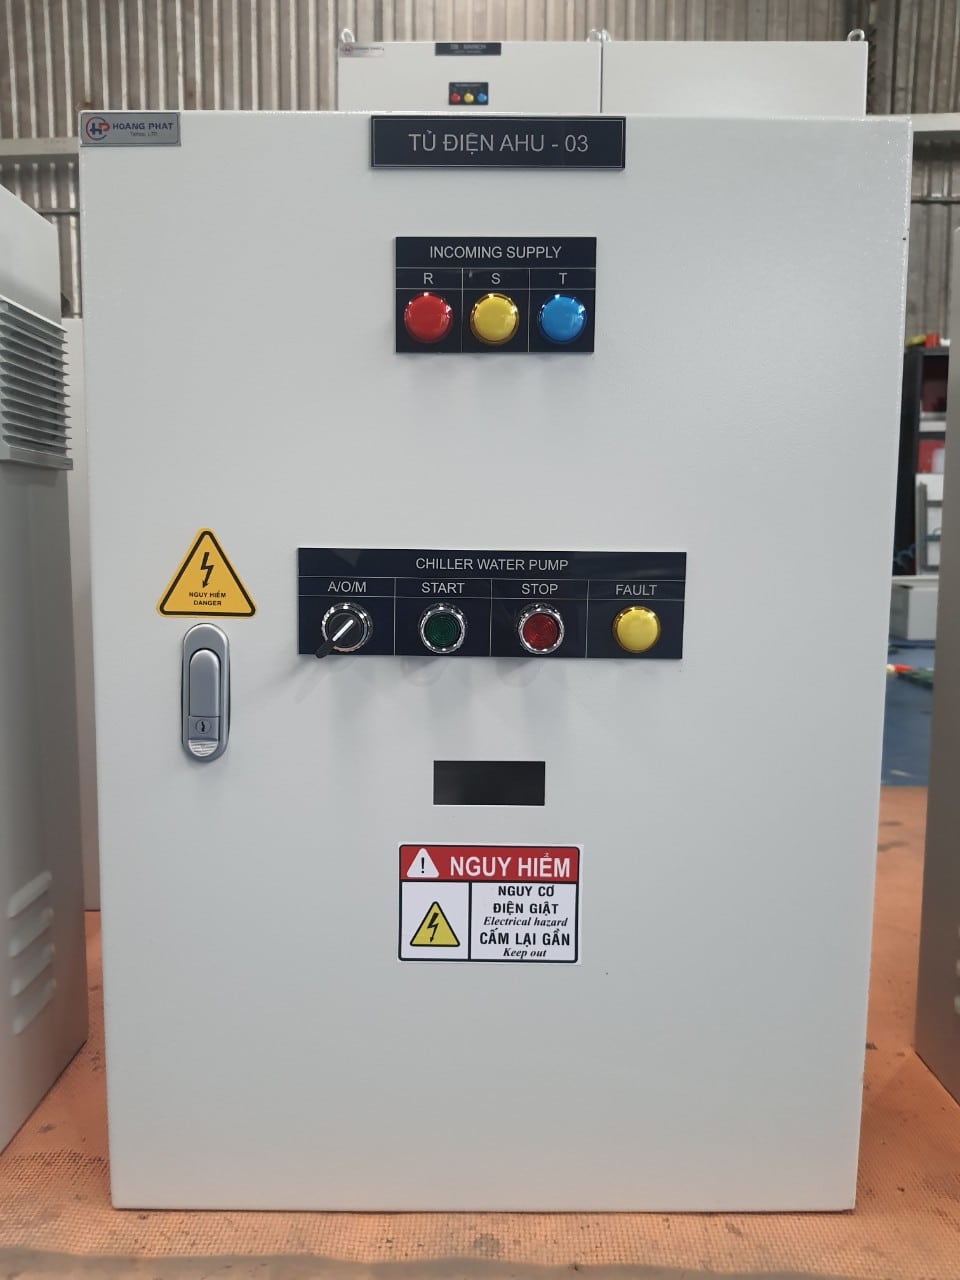 Tủ điện điều khiển không khí AHU do Hoàng Phát sản xuất có chất lượng vượt bật cùng giá thành cạnh tranh nhất 